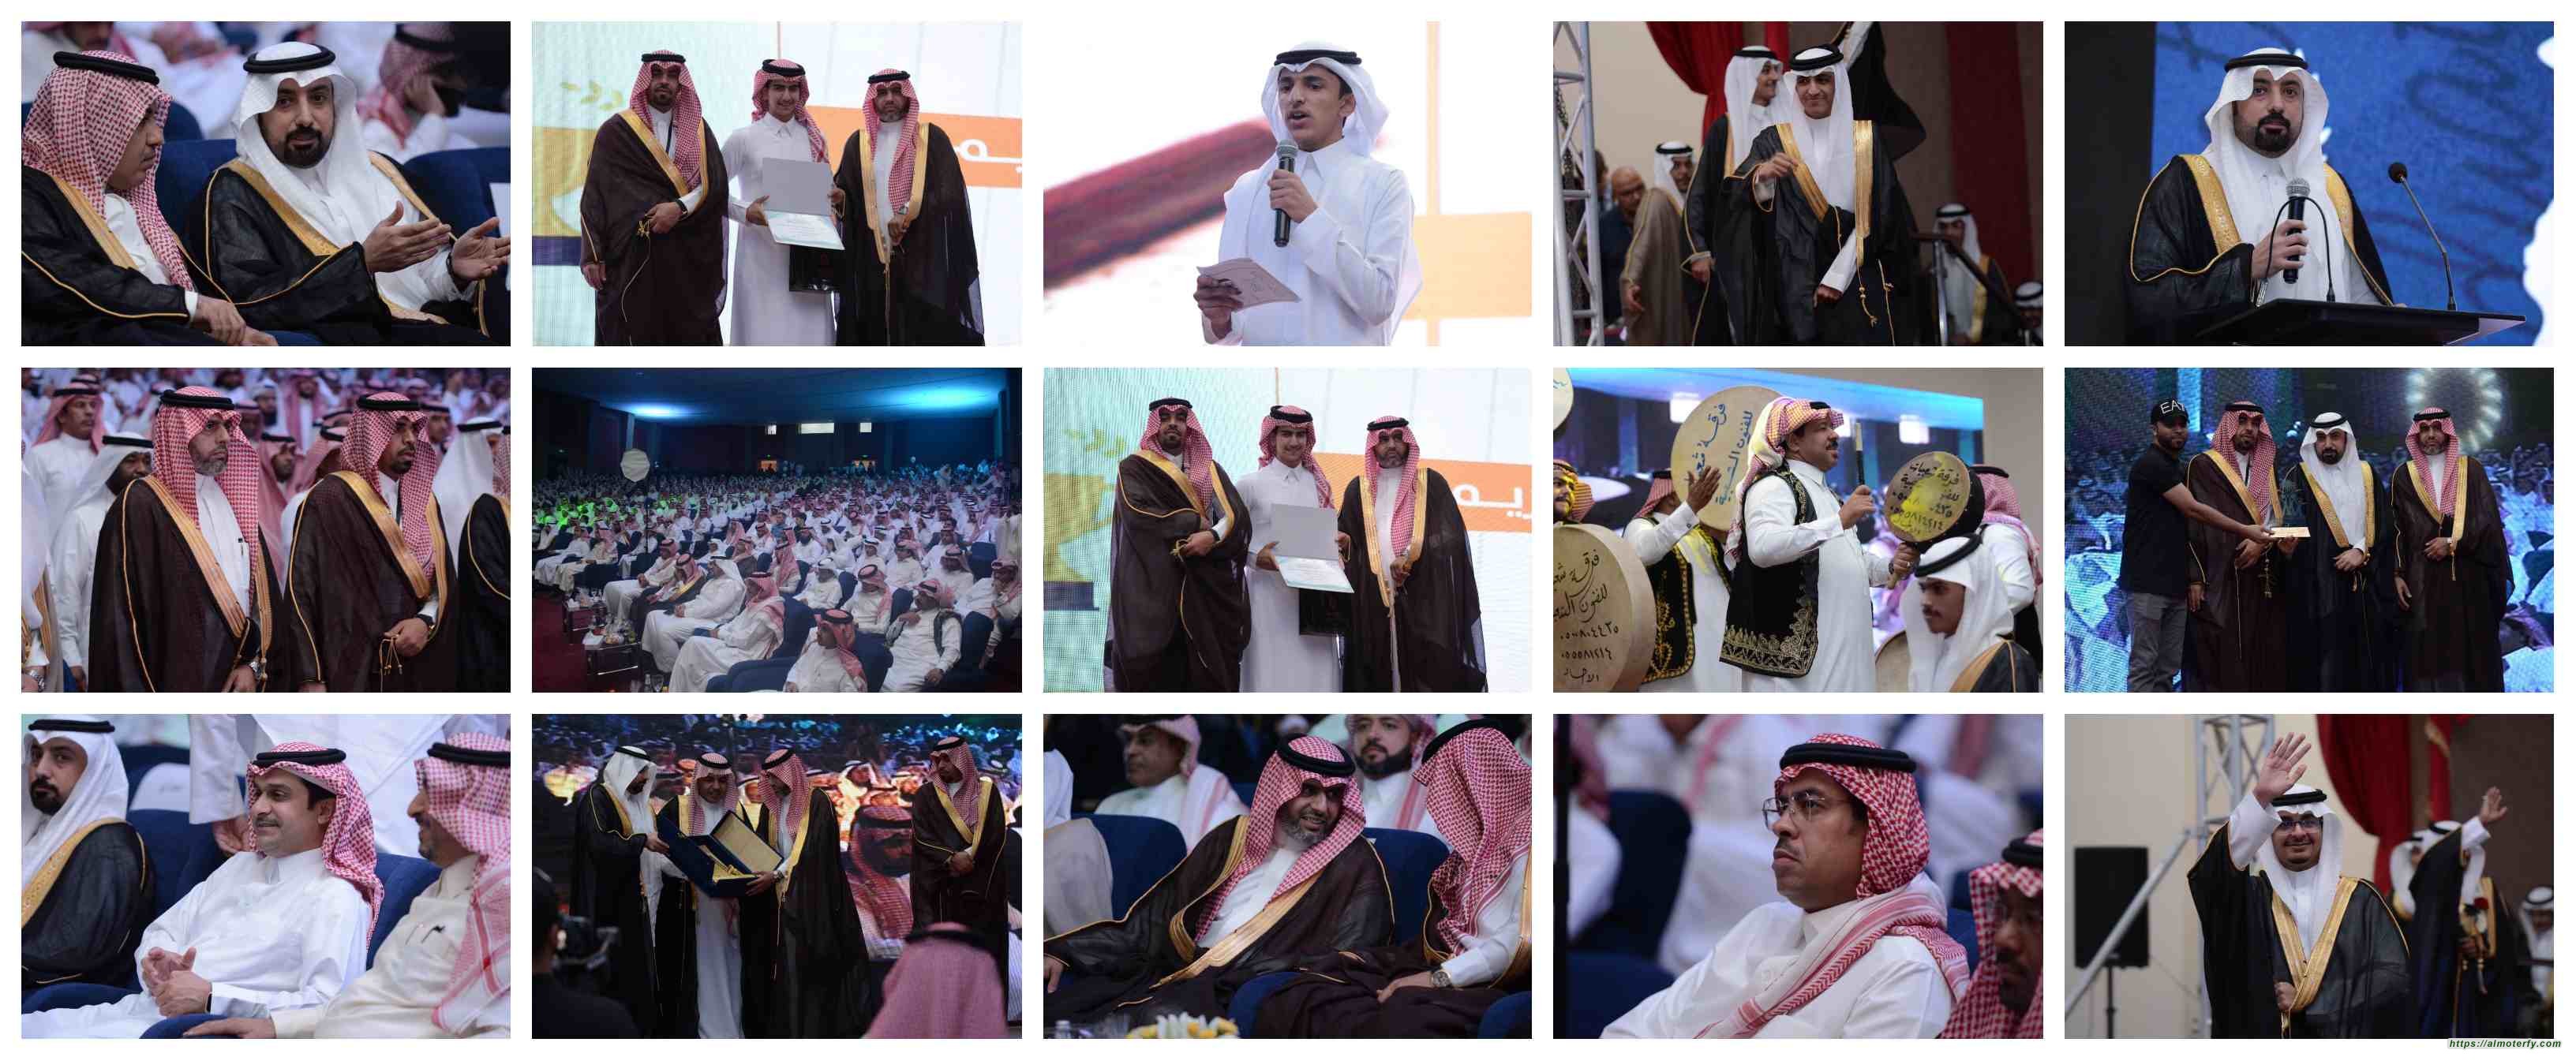 بحضور اكثر من 800شخص في حفل مهيب ثانوية الملك خالد تحتفل بخريجيها لعام 2022 مع شريكها الاستراتيجي (جمعية أصدقاء السعودية)